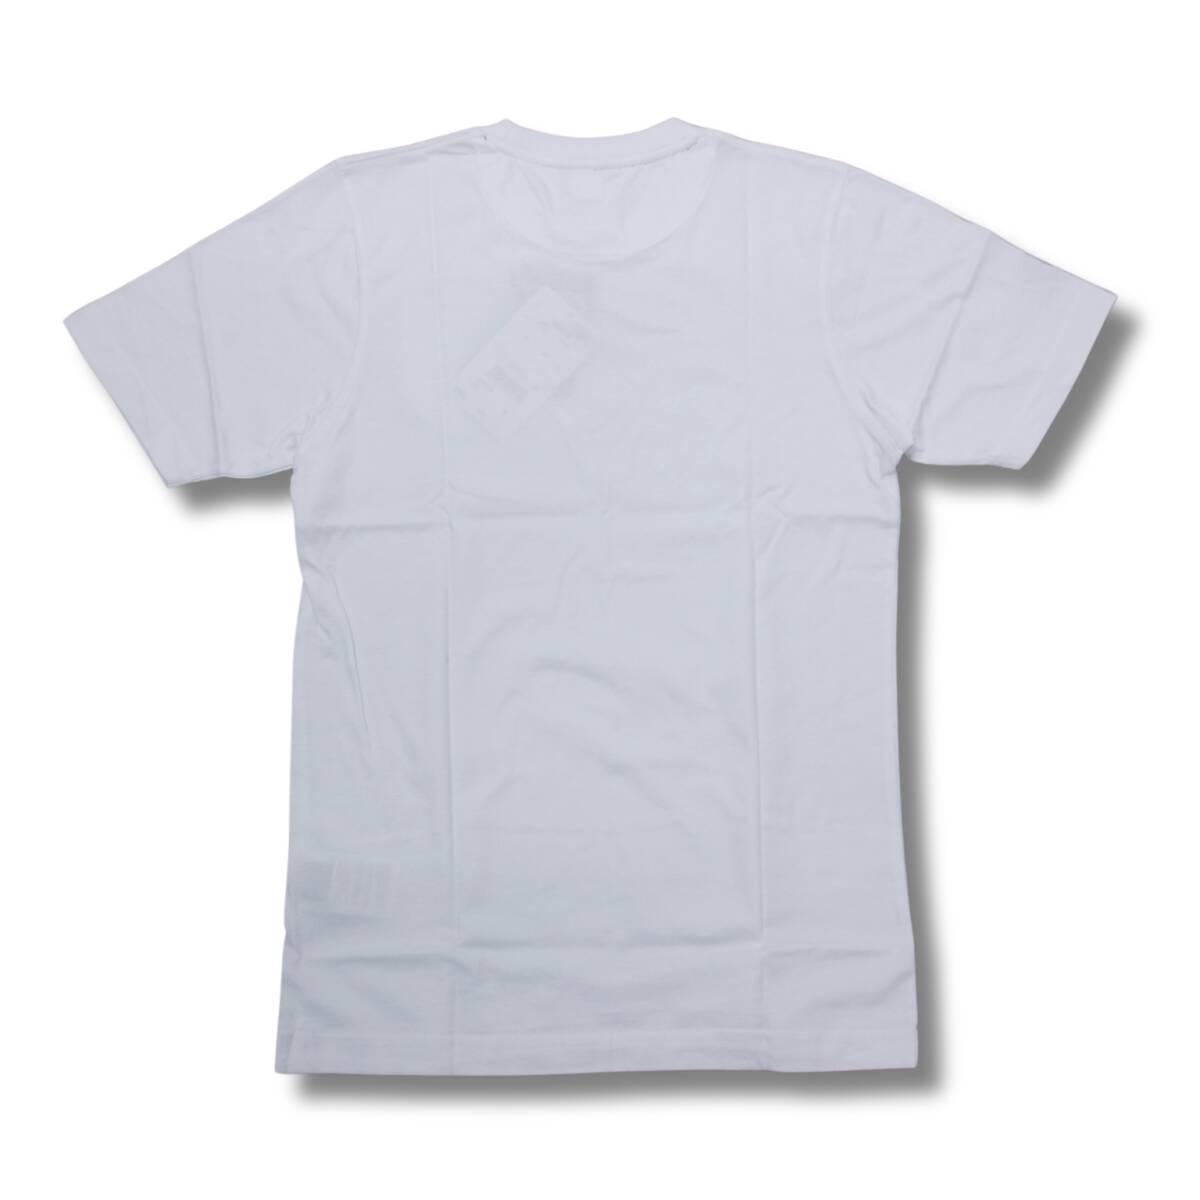 即決☆アンブロ Tシャツ XLサイズ イングランド代表 テリーブッチャー 送料無料 貴重 アンブロモデル 国内正規品